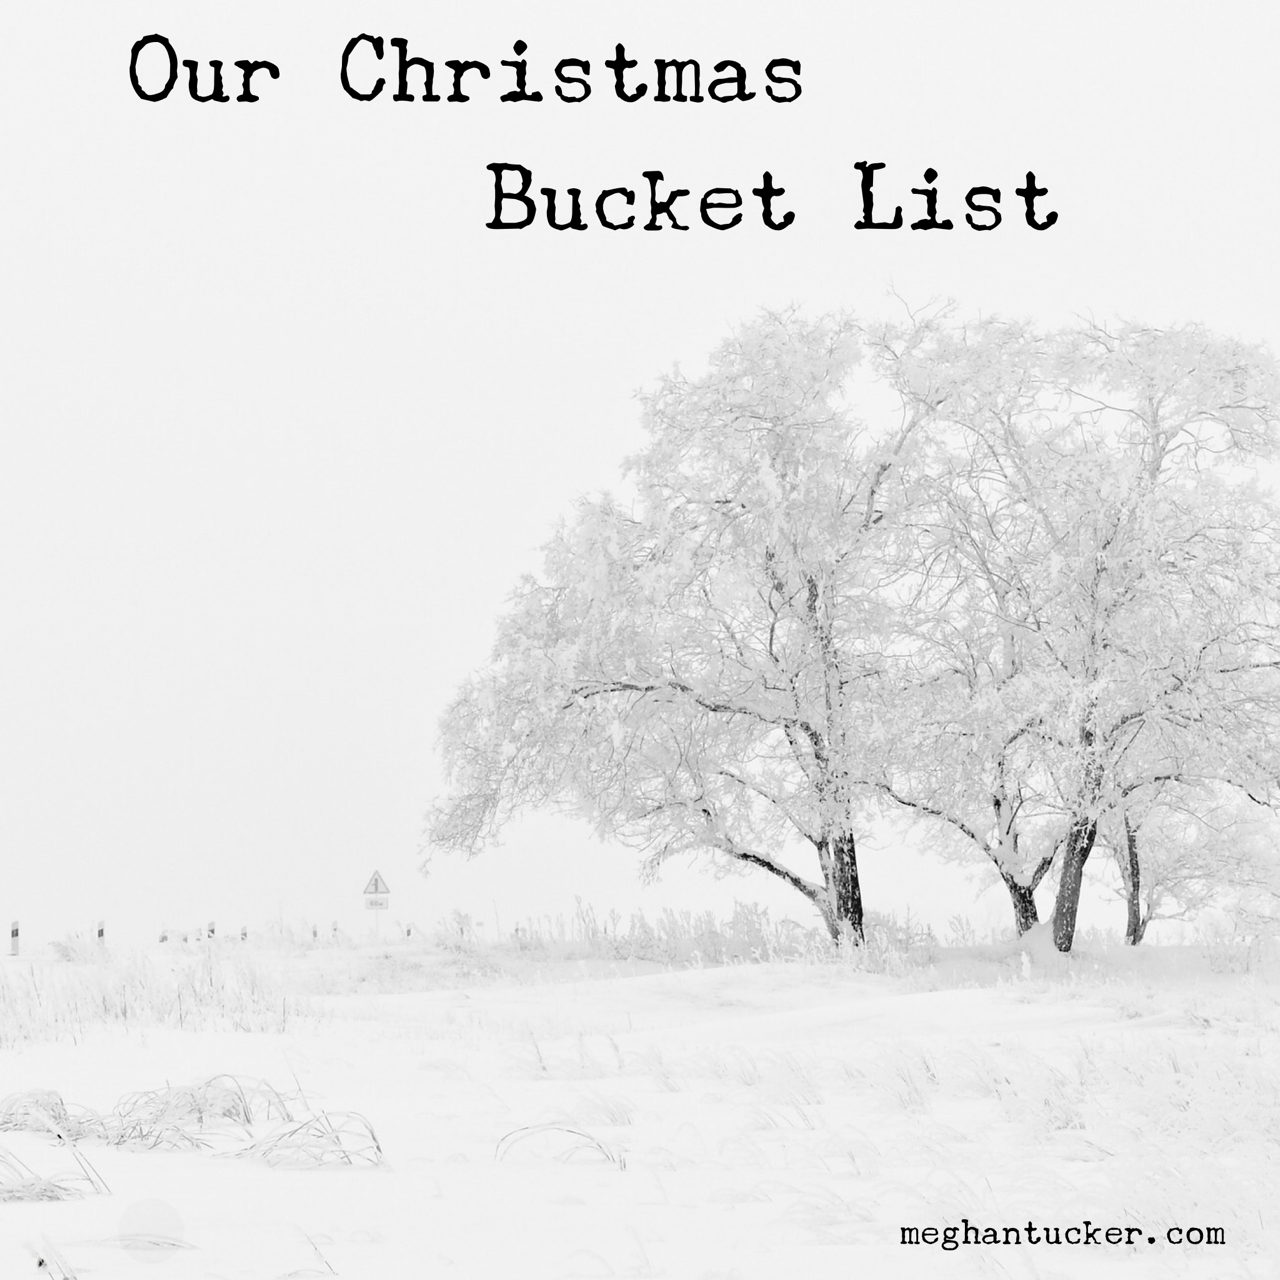 Our Christmas Bucket List